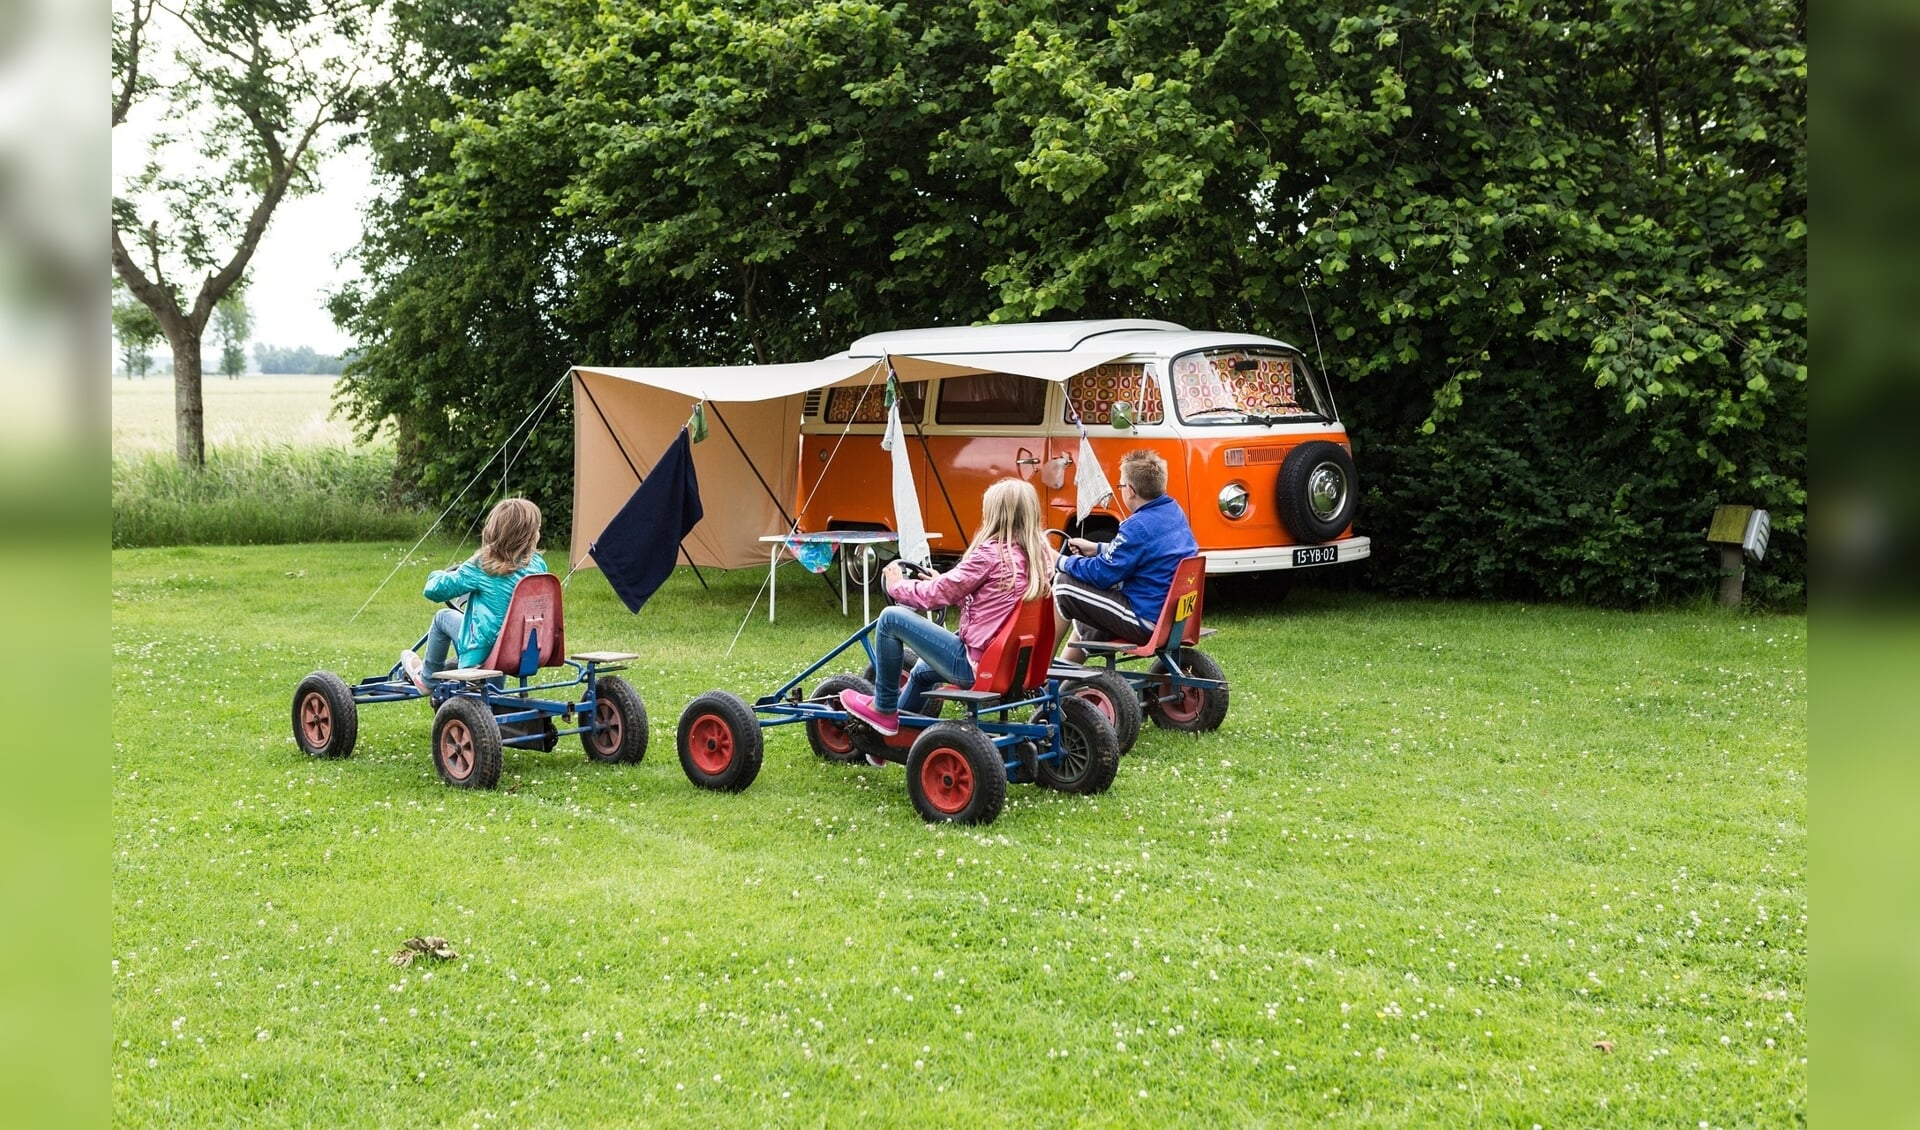 De provincie Noord-Holland gaat eigenaren van vakantieparken en campings ondersteunen die hun locaties willen opknappen en verduurzamen.